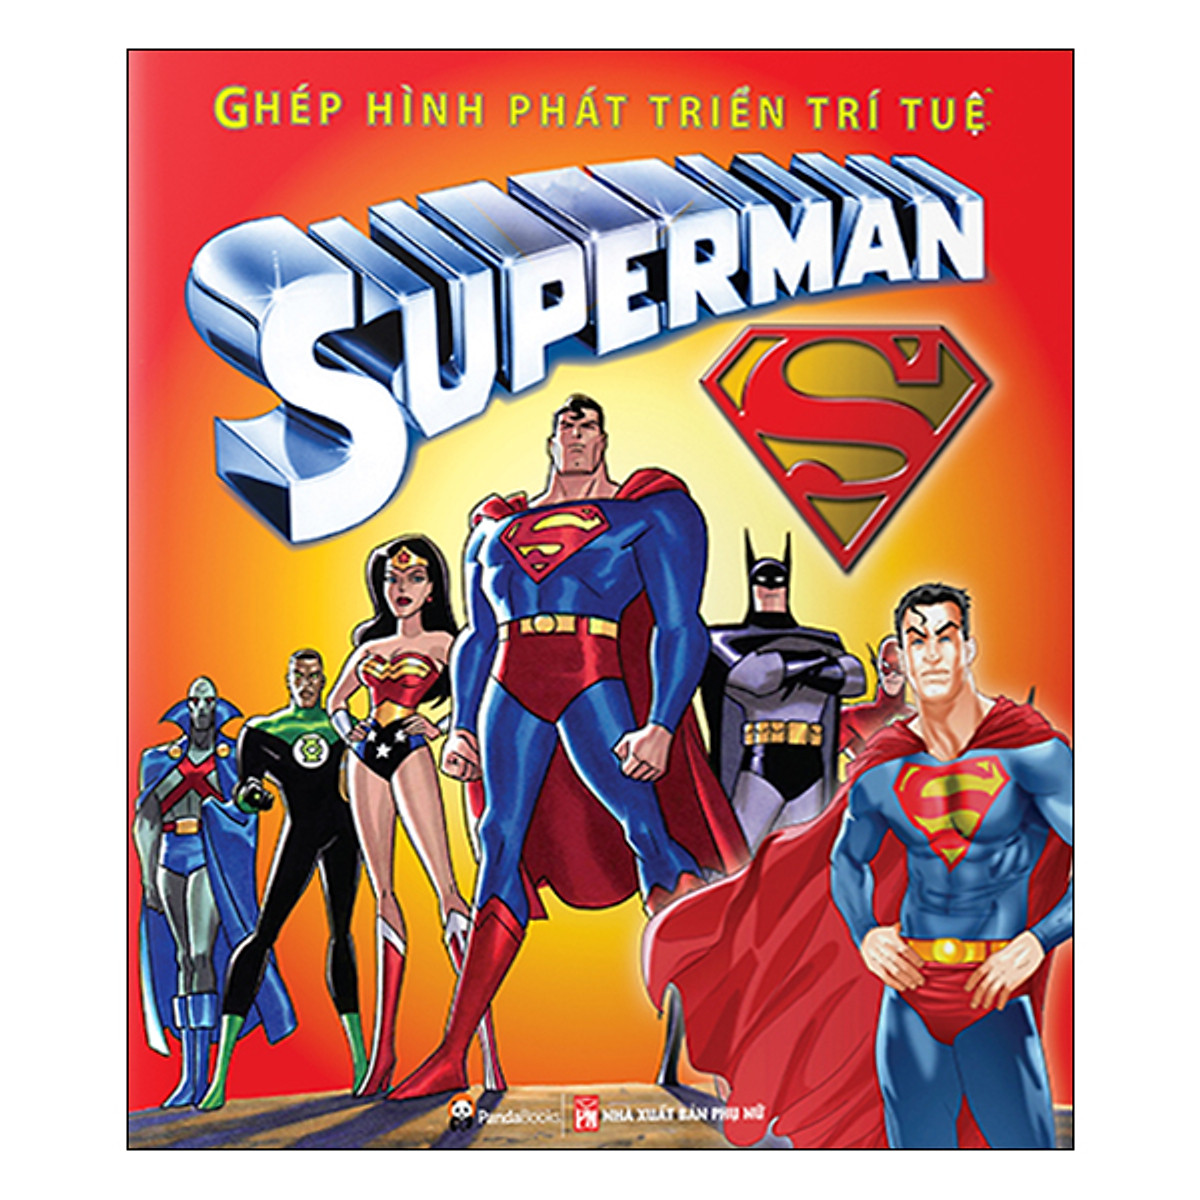 Mua Ghép Hình Phát Triển Trí Tuệ - Superman tại Nhà sách Fahasa